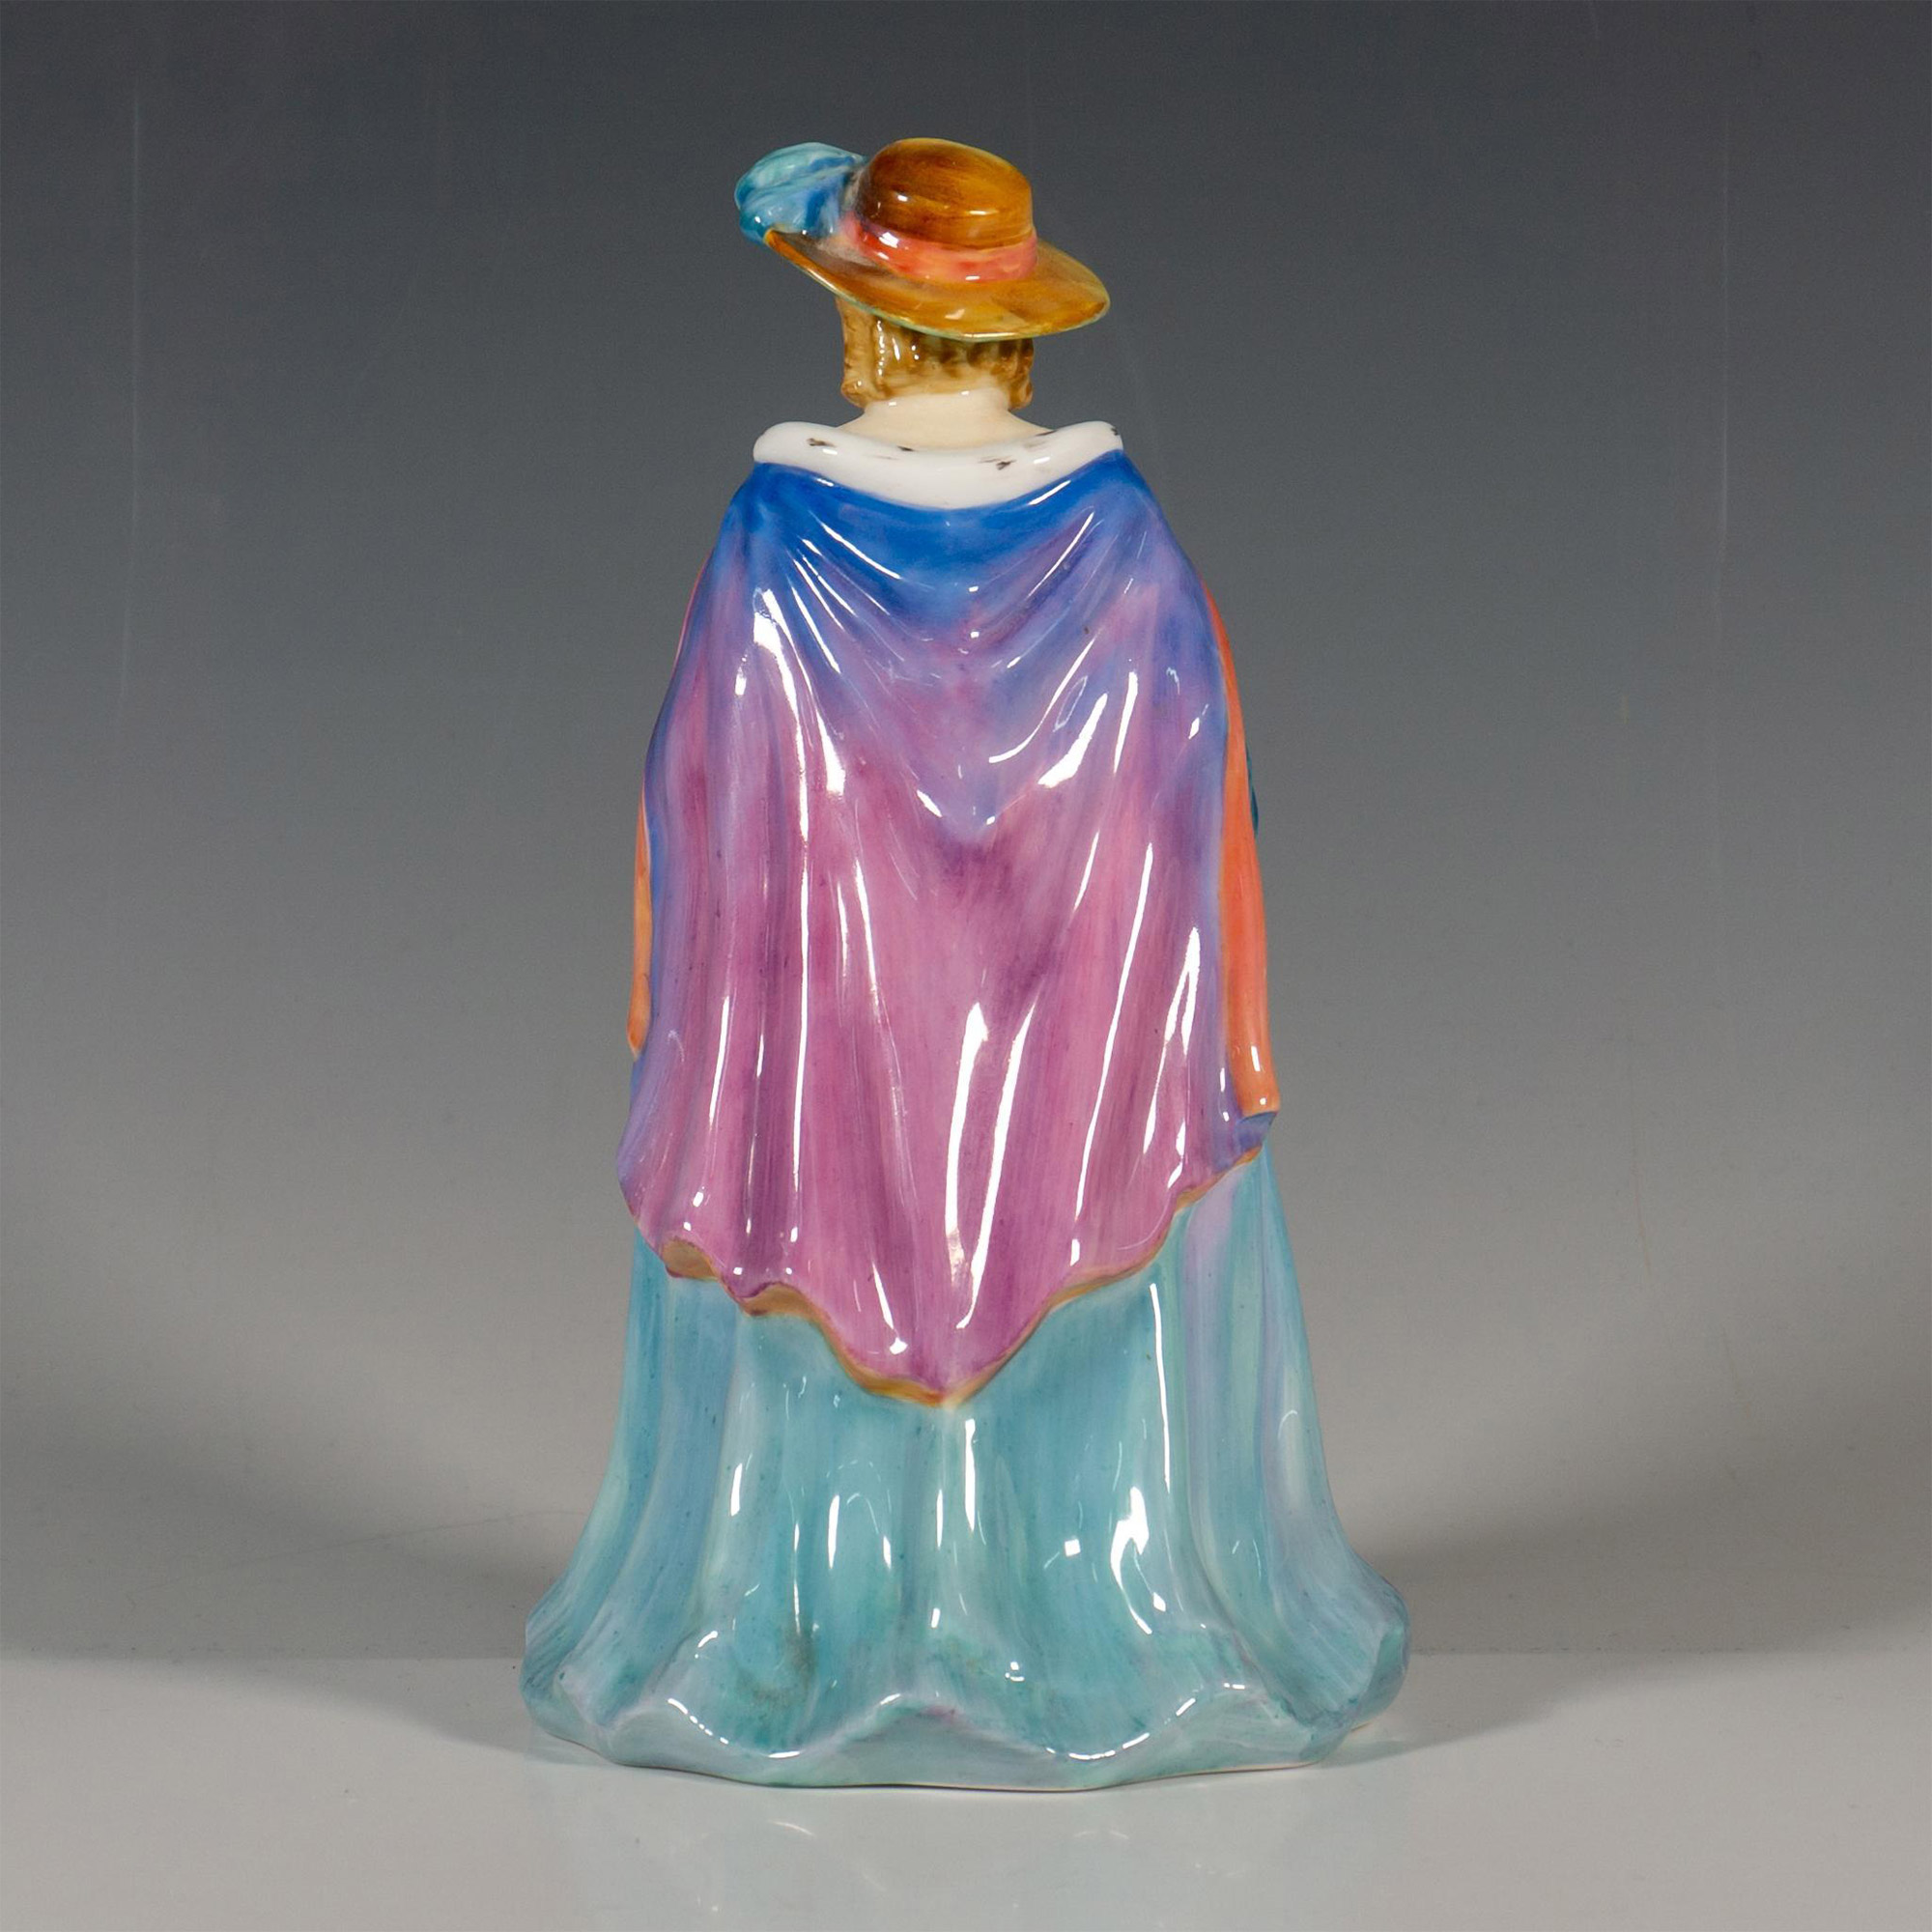 Paragon China Porcelain Figurine, Lady Isobel - Image 2 of 3